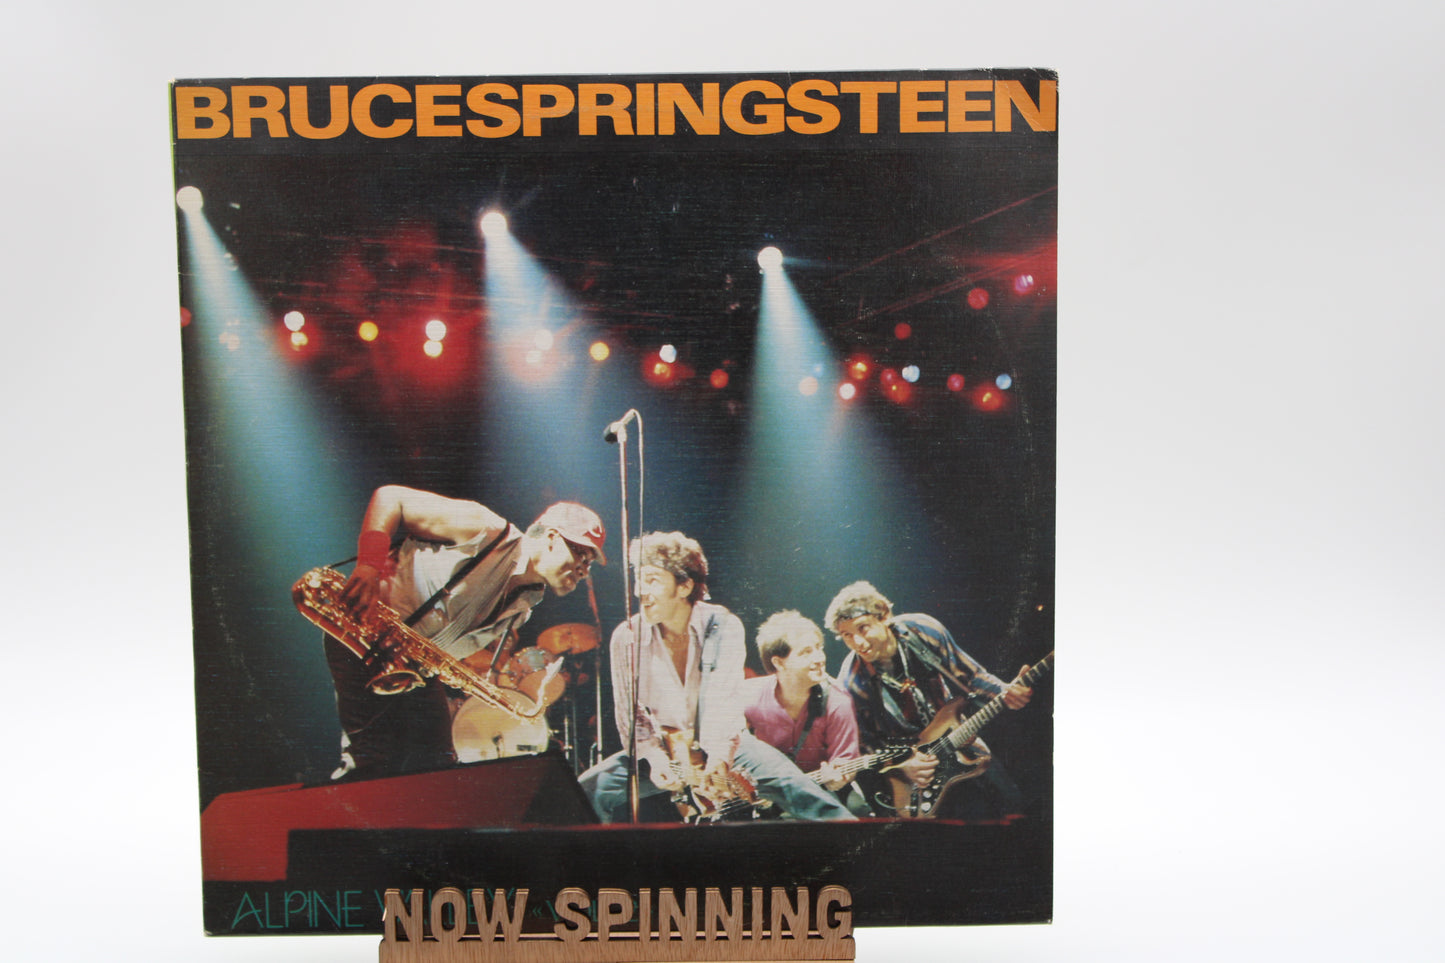 Bruce Springsteen - Live - Alpine Valley - Vol. 1 & Vol. 2 - Complete Set Vinyl - 4 LPs BLV